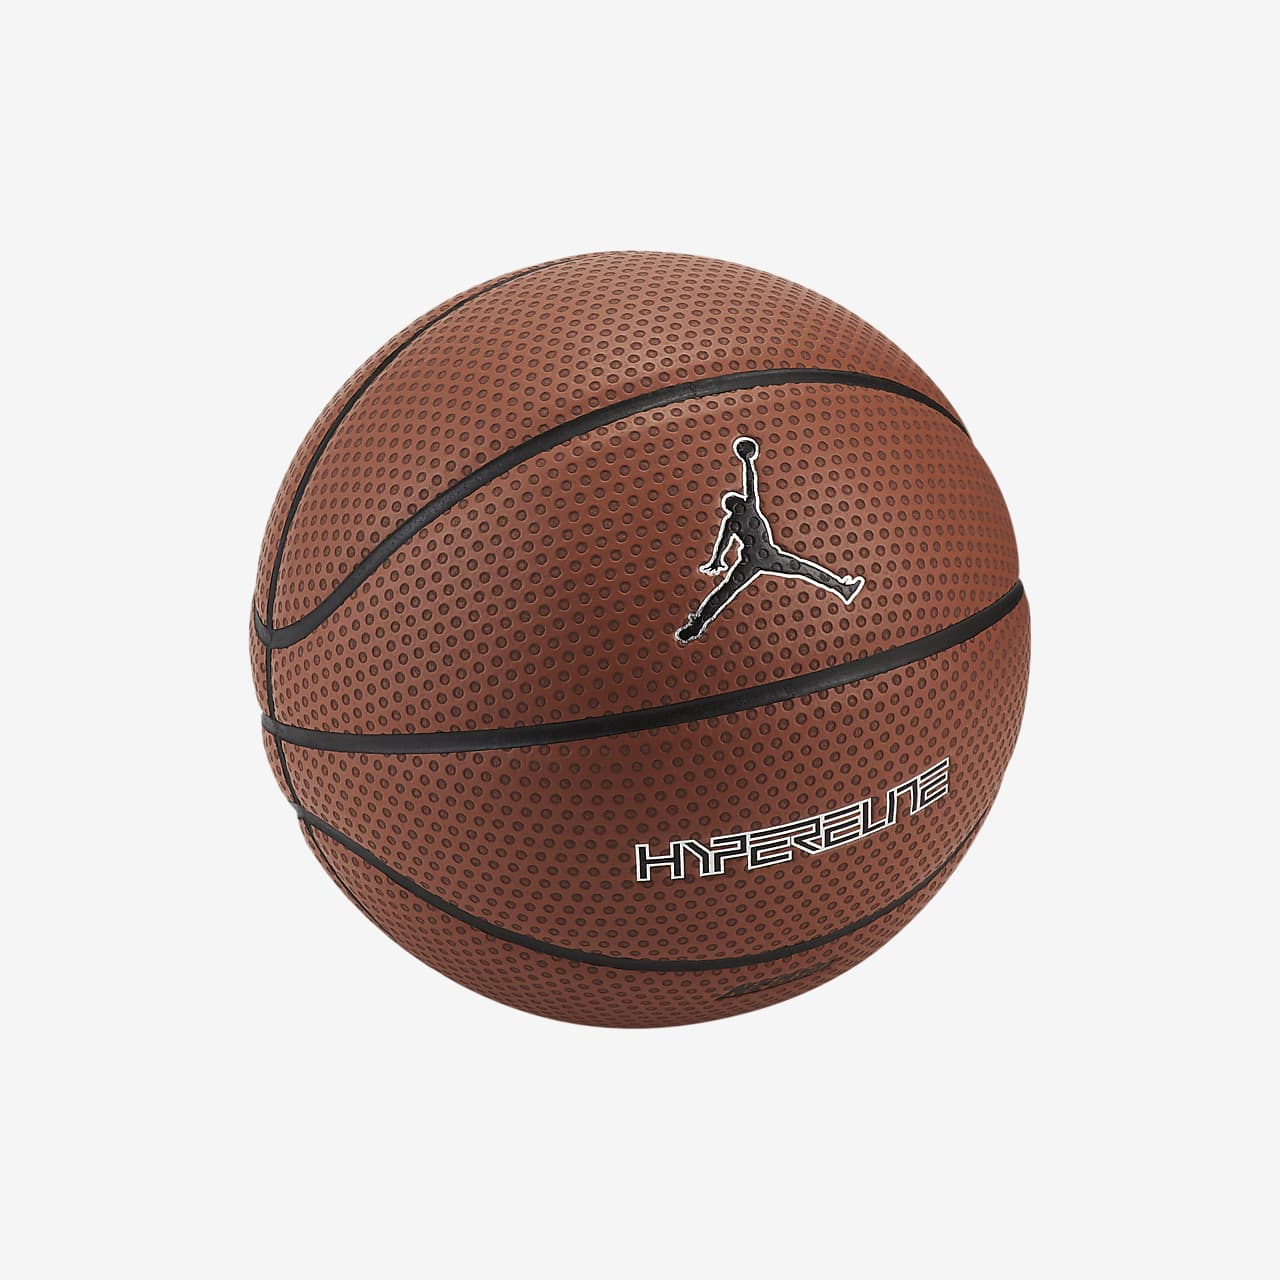 jordan basketball size 7